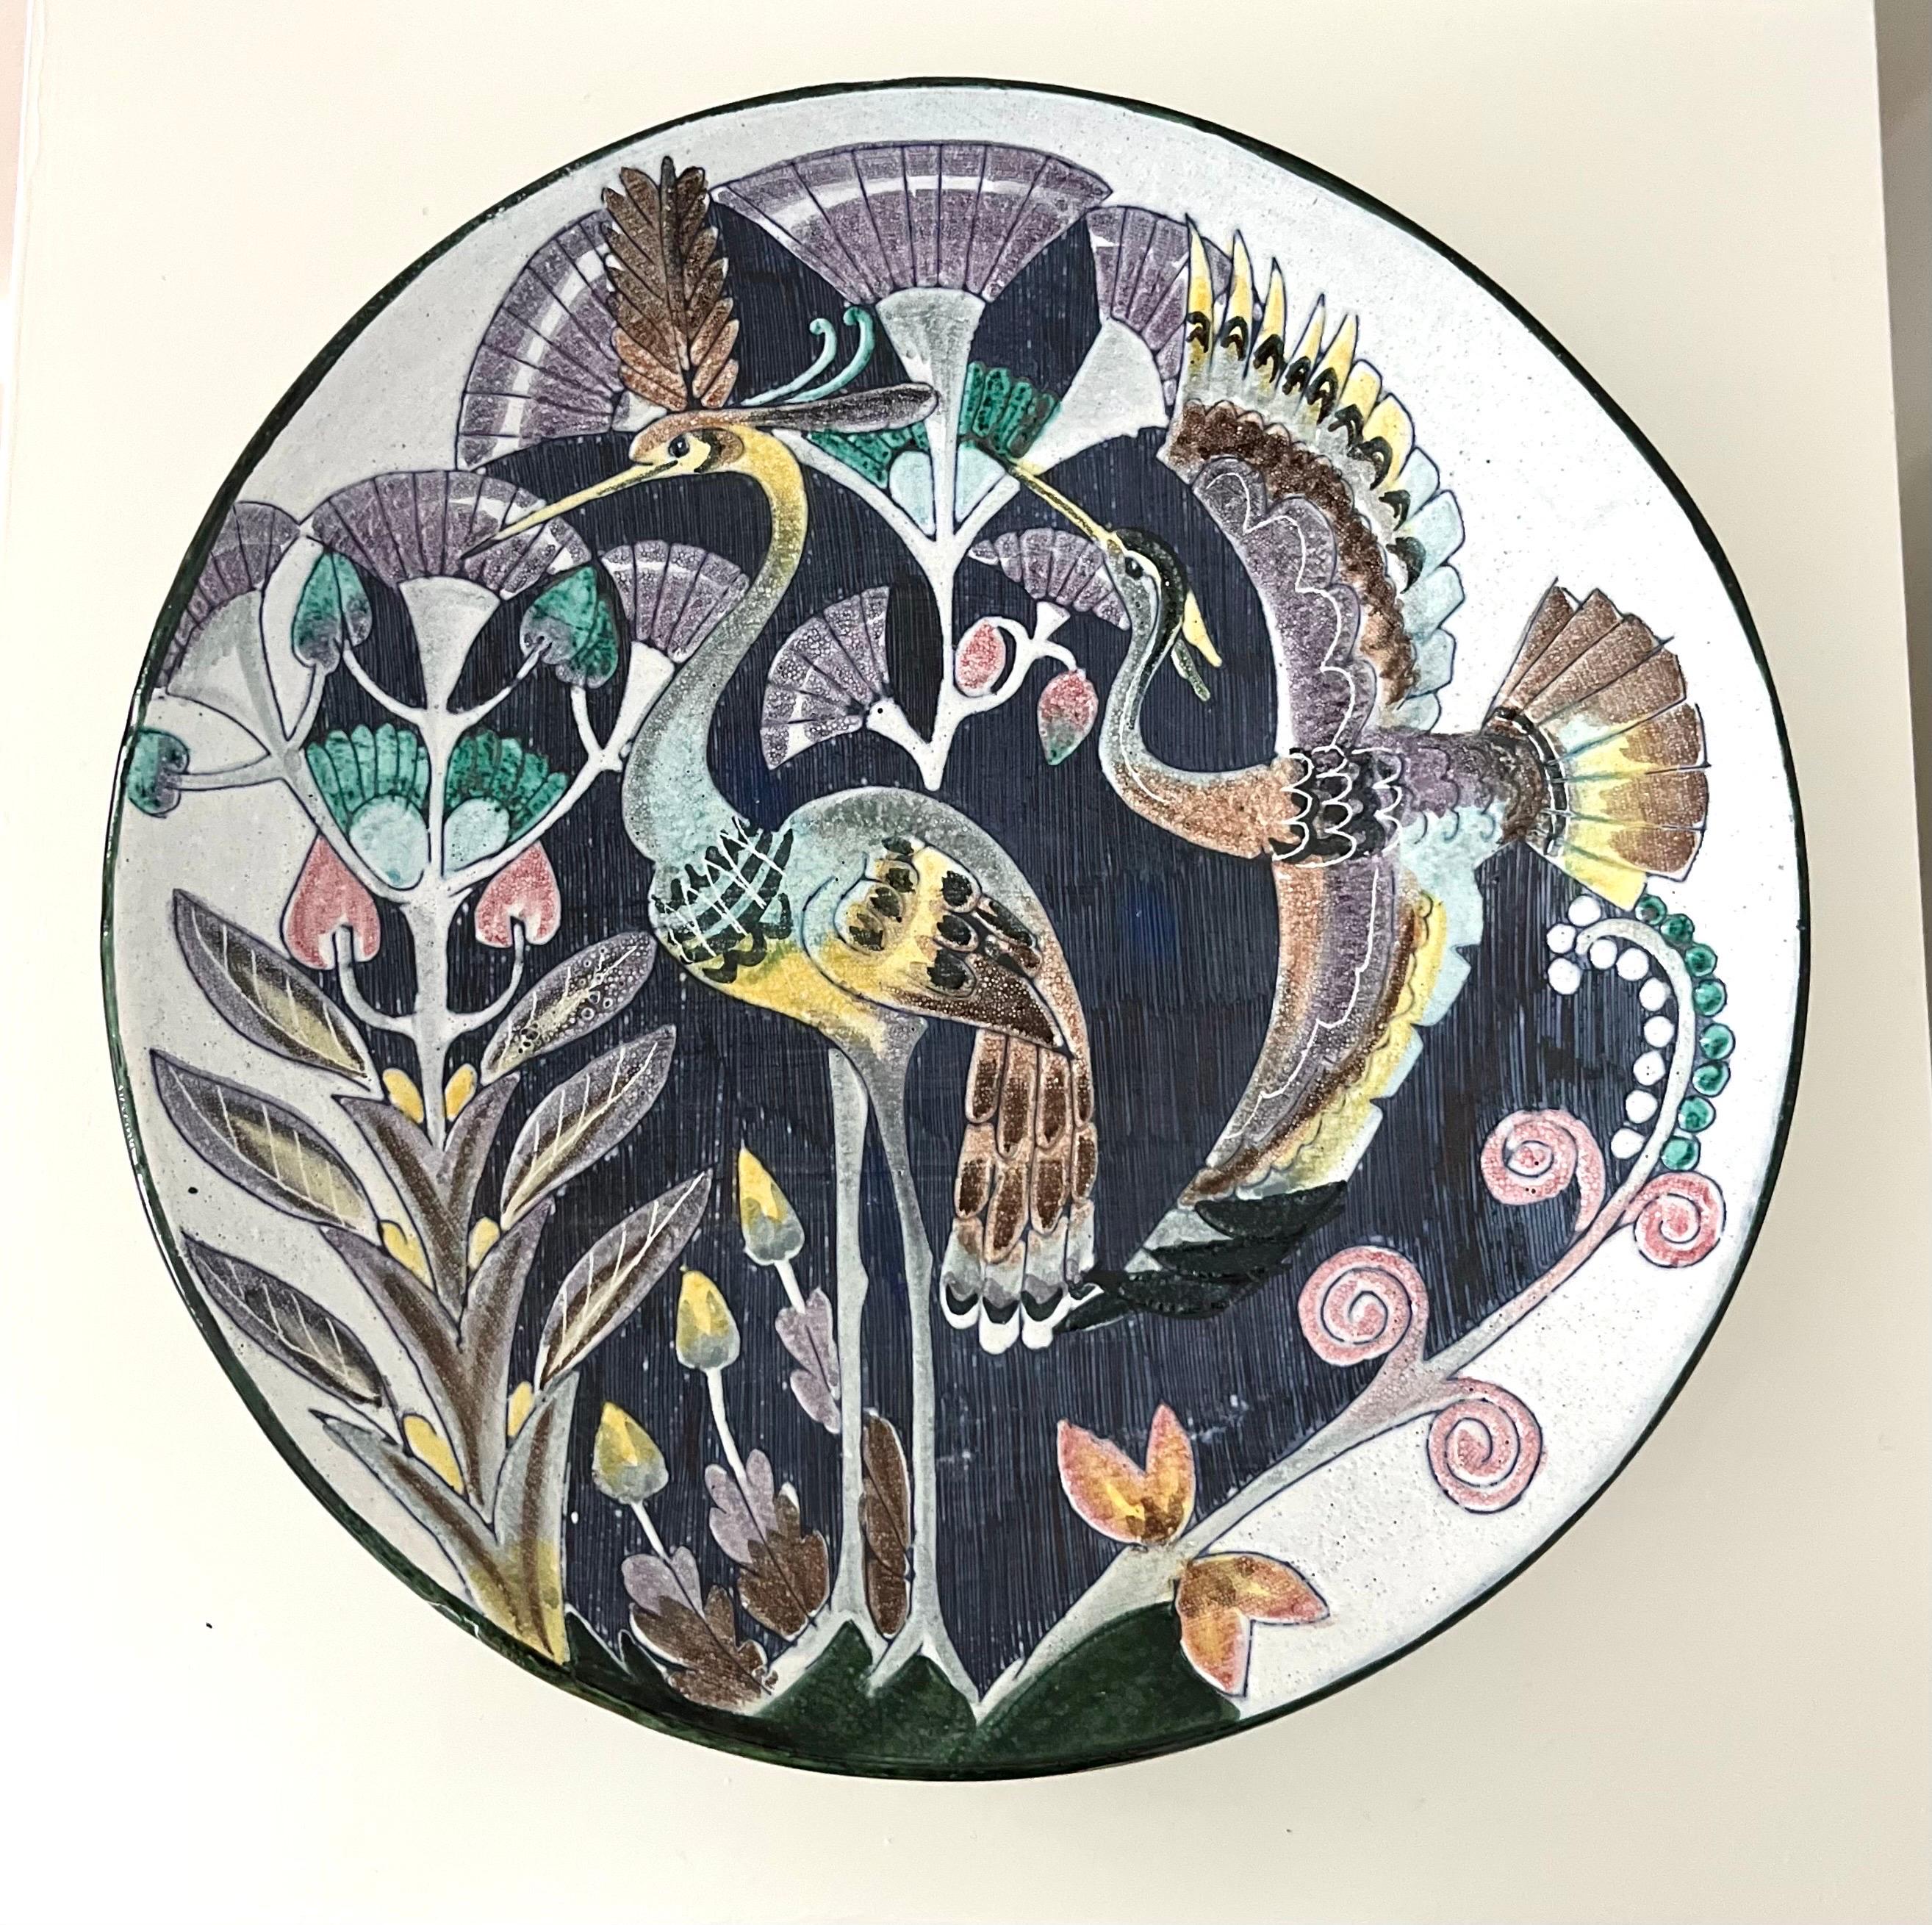 Schwedische moderne Tilgmans-Wandplatte aus Keramik mit Schwanen, 1958

Wunderschönes handgefertigtes Keramikstück von Tilgmans Keramik aus Schweden. Vollständig glasierte, hängende Wanddekoration, die zwei elegante Vögel und langstielige Pflanzen